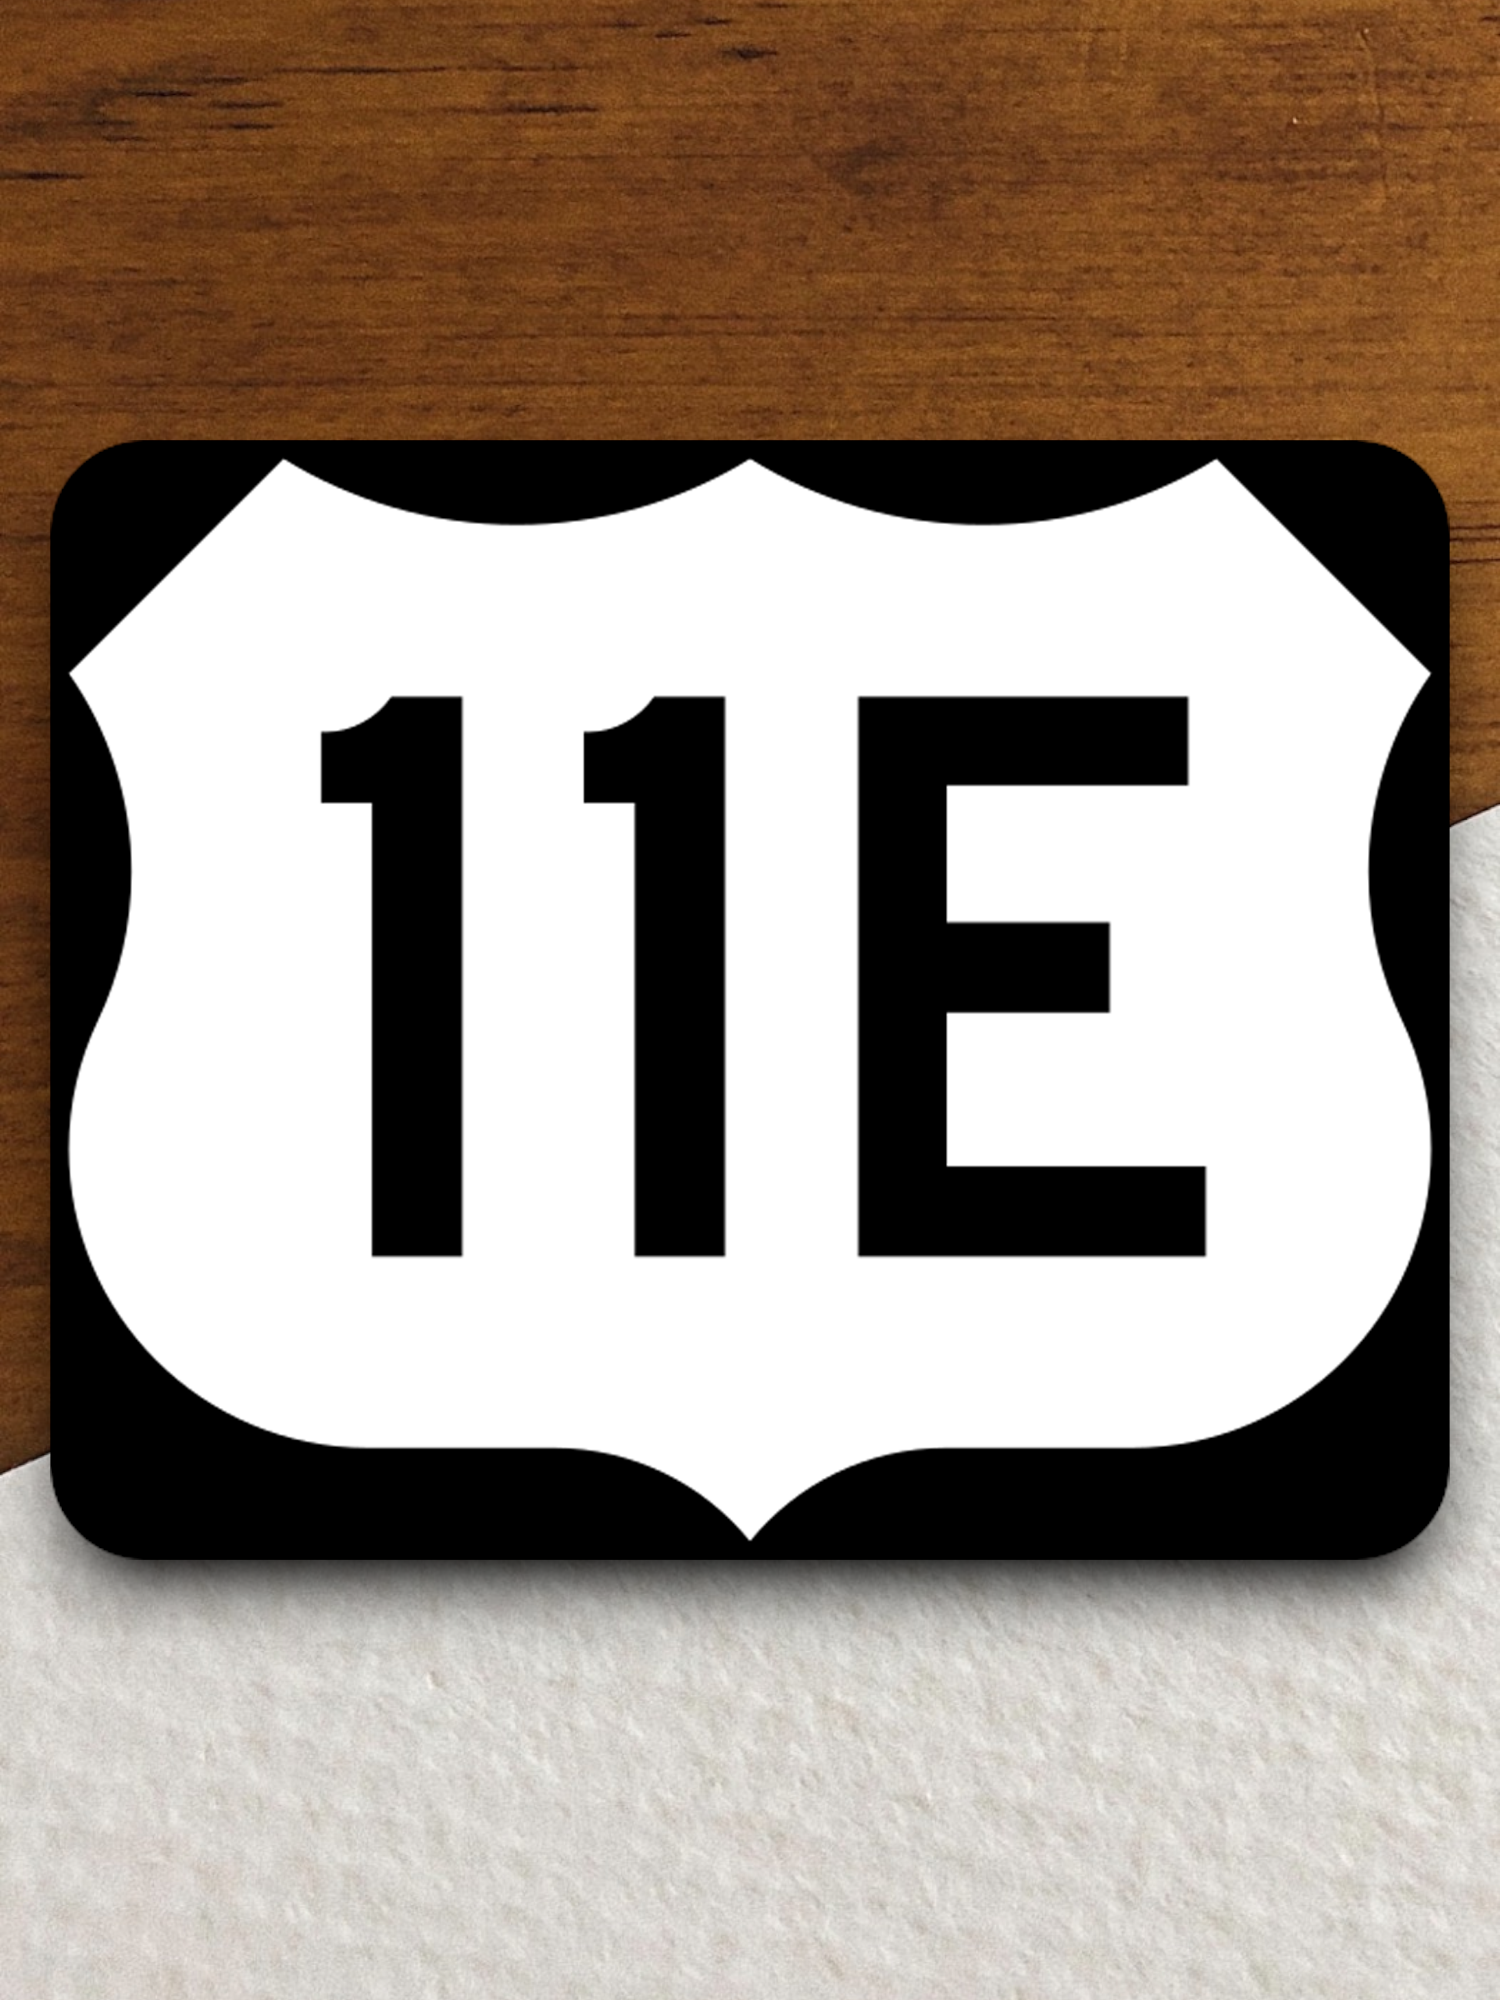 U.S. Route 11E Road Sign Sticker